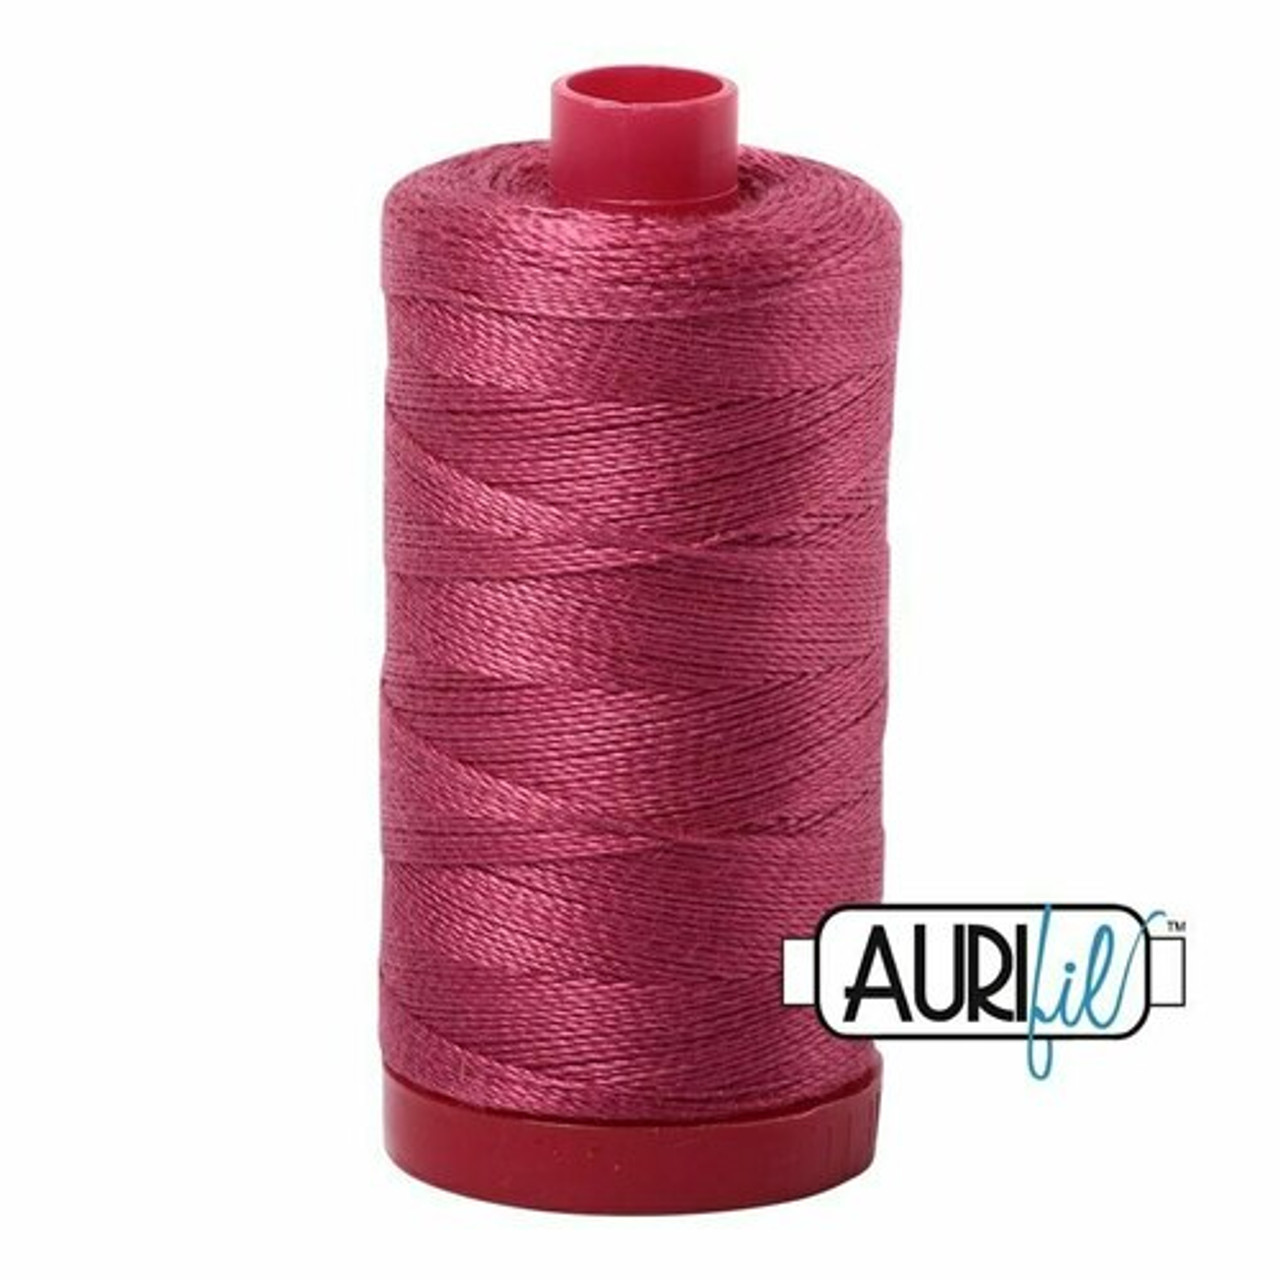 Aurifil 2455 - Medium Carmine Red